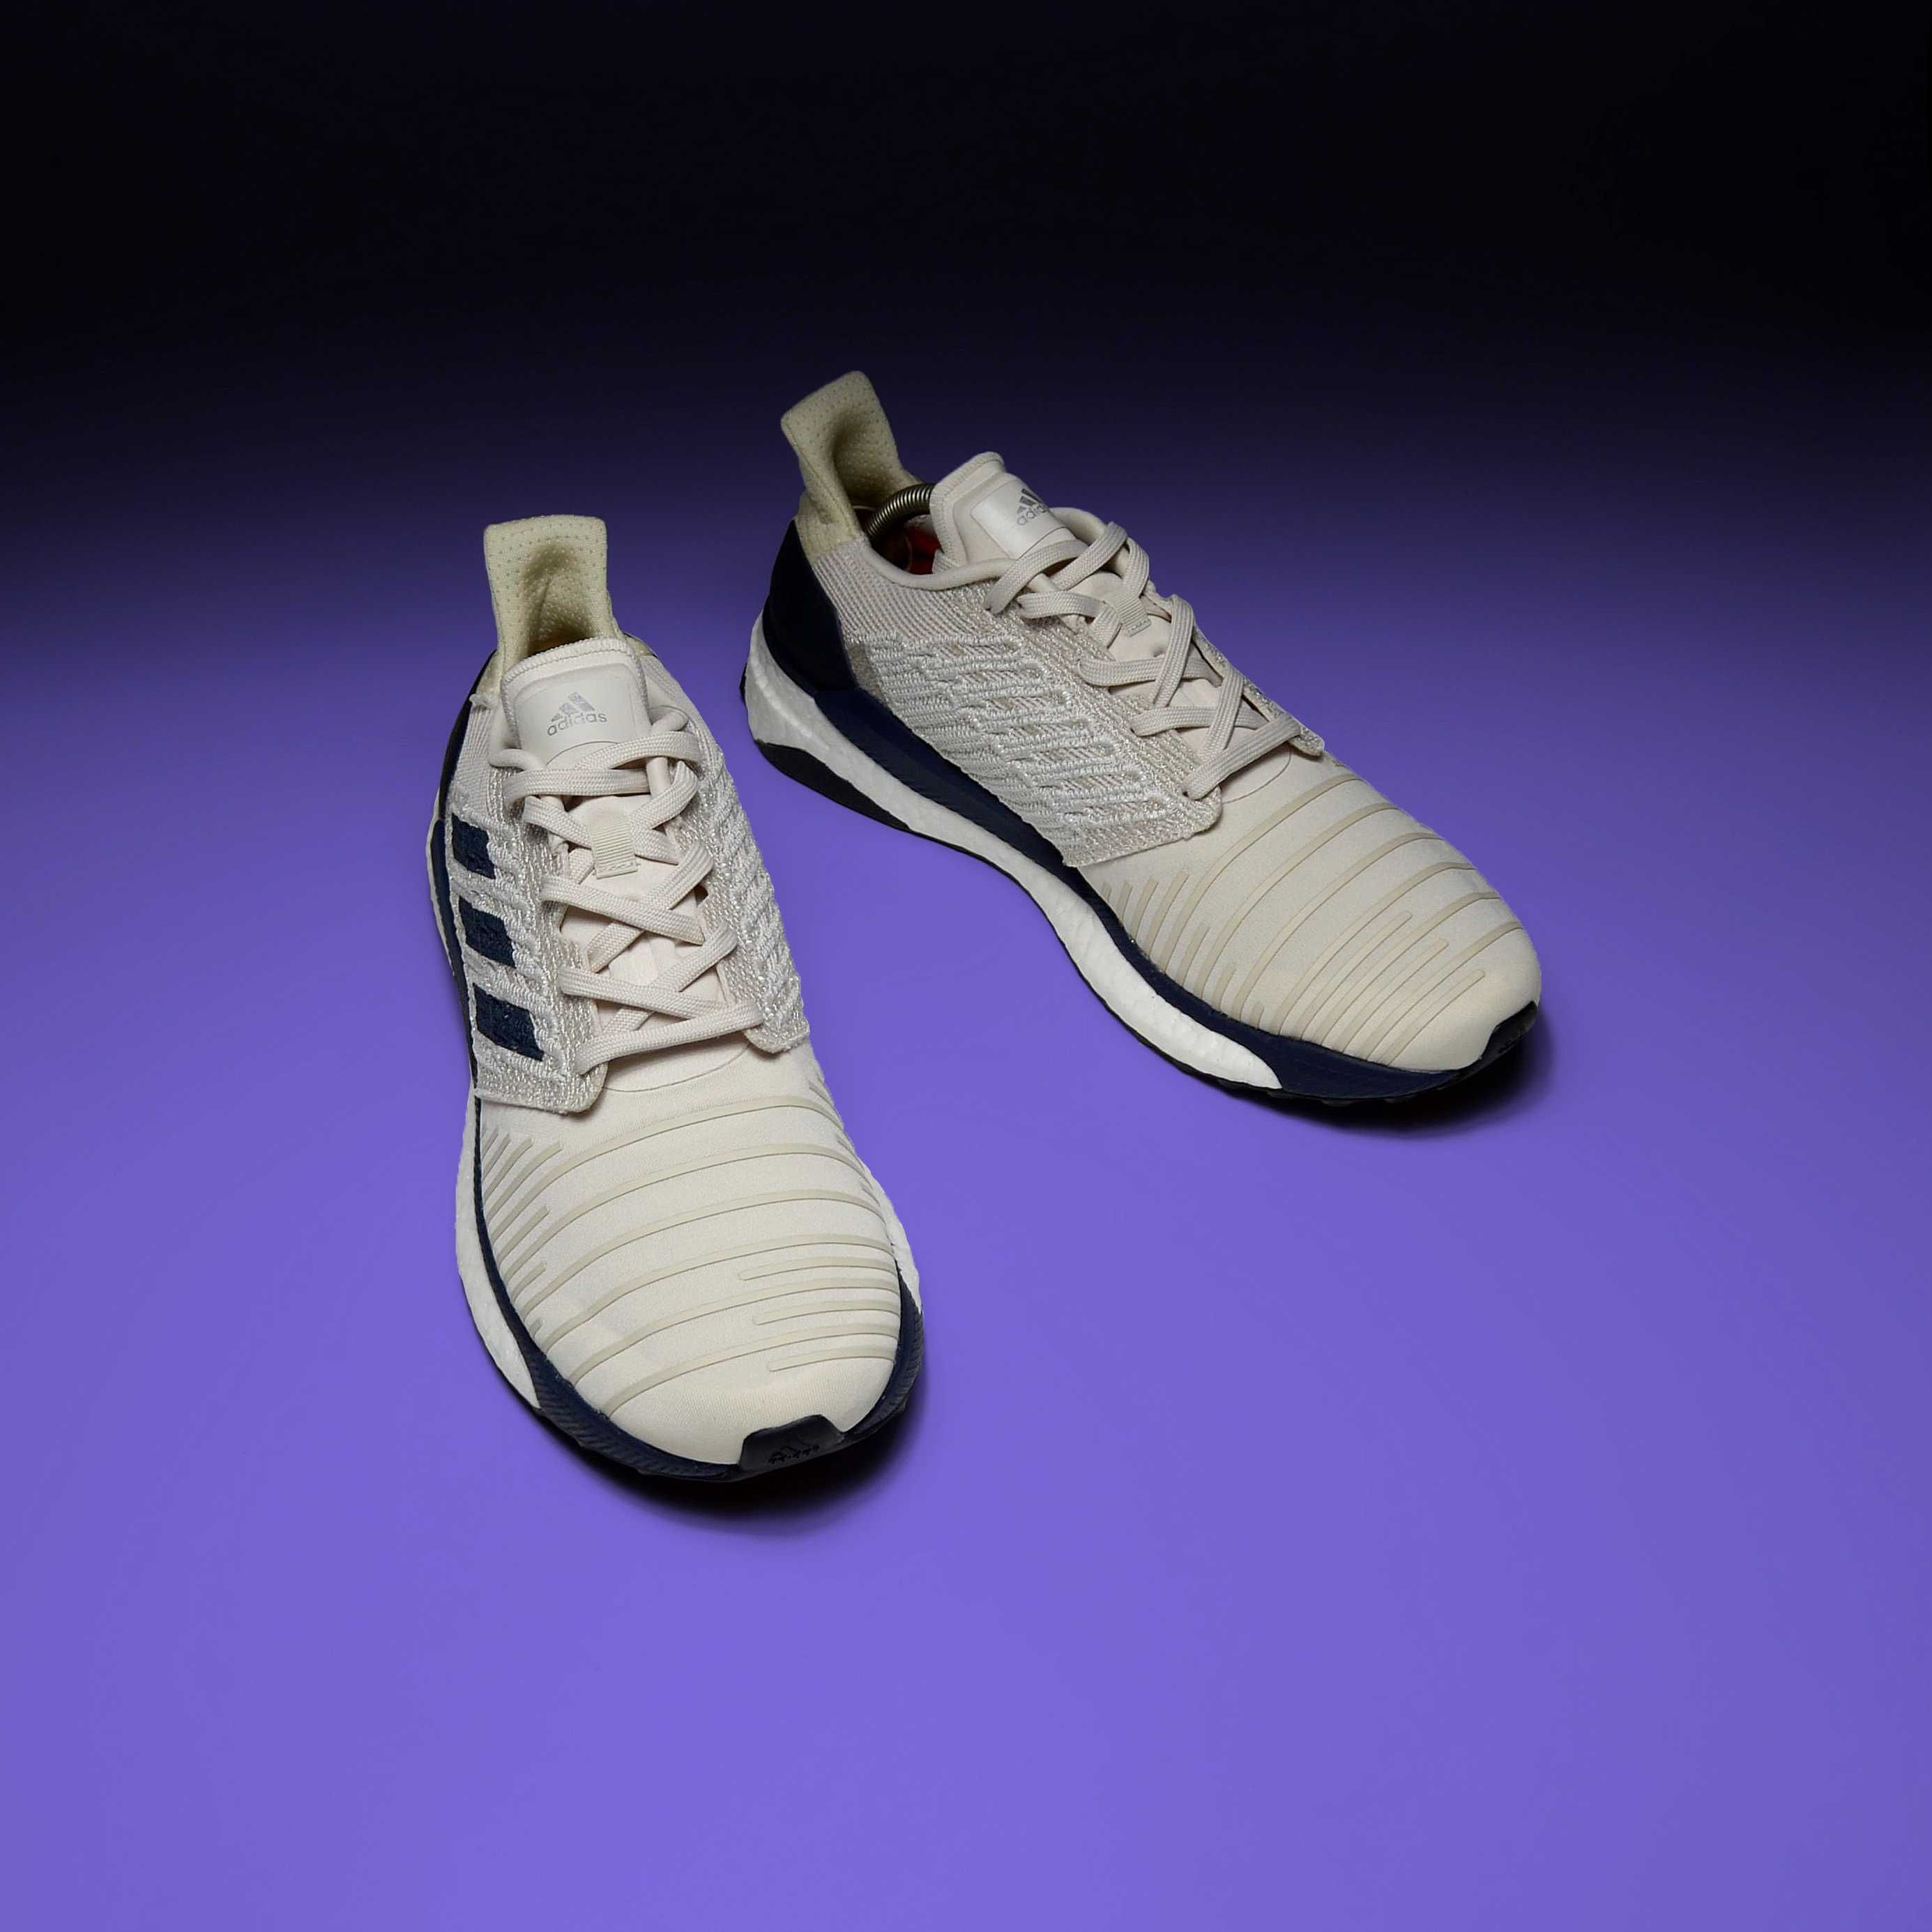 Кросівки Adidas Solar Boost. Оригінал. Розмір 42.5 - 27 см